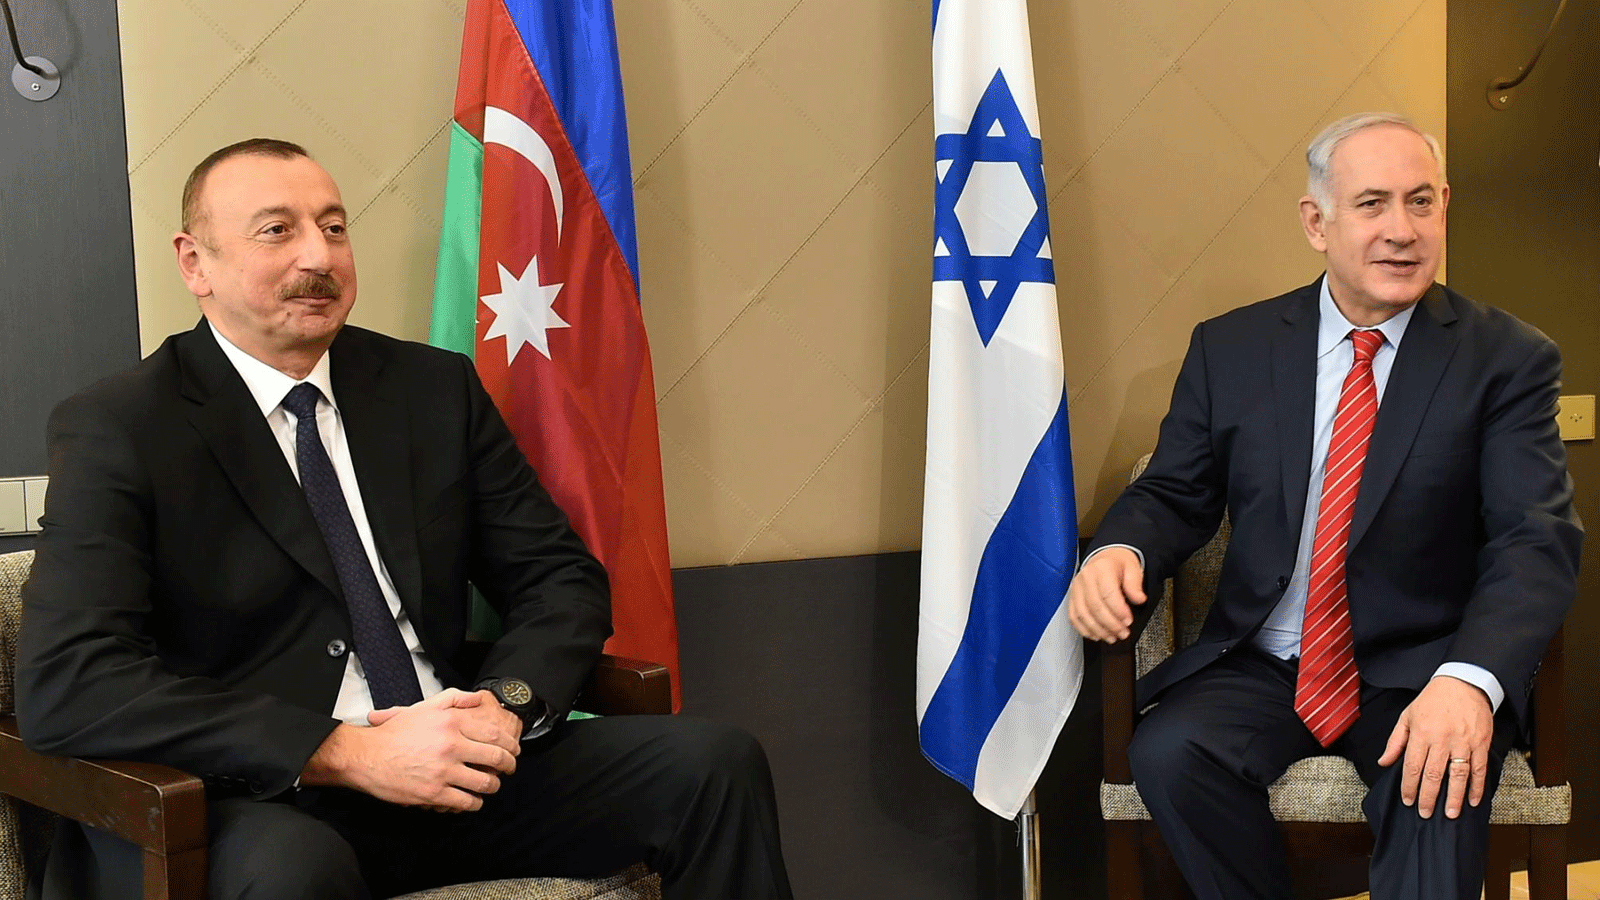 صورة أرشيفية التُقِطَت في 28 يناير\كانون الثاني 2018 لرئيس الوزراء الإسرائيلي المكلف بتشكيل الحكومة بنيامين نتانياهو والرئيس الأذربيجاني إلهام علييف(الرئاسة الأذربيجانية)